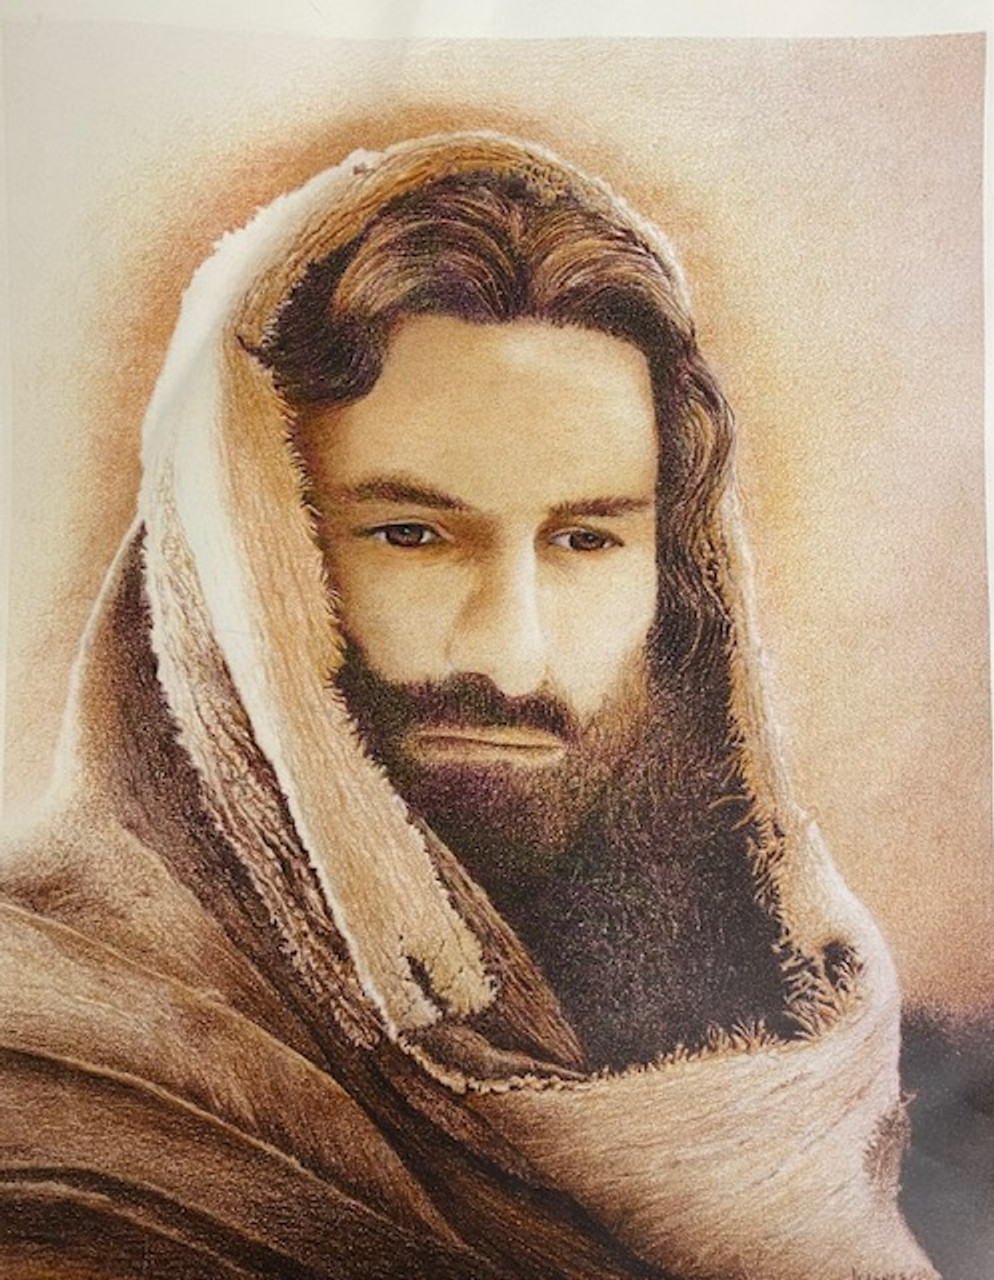 Print of Jesus in various shades of brown